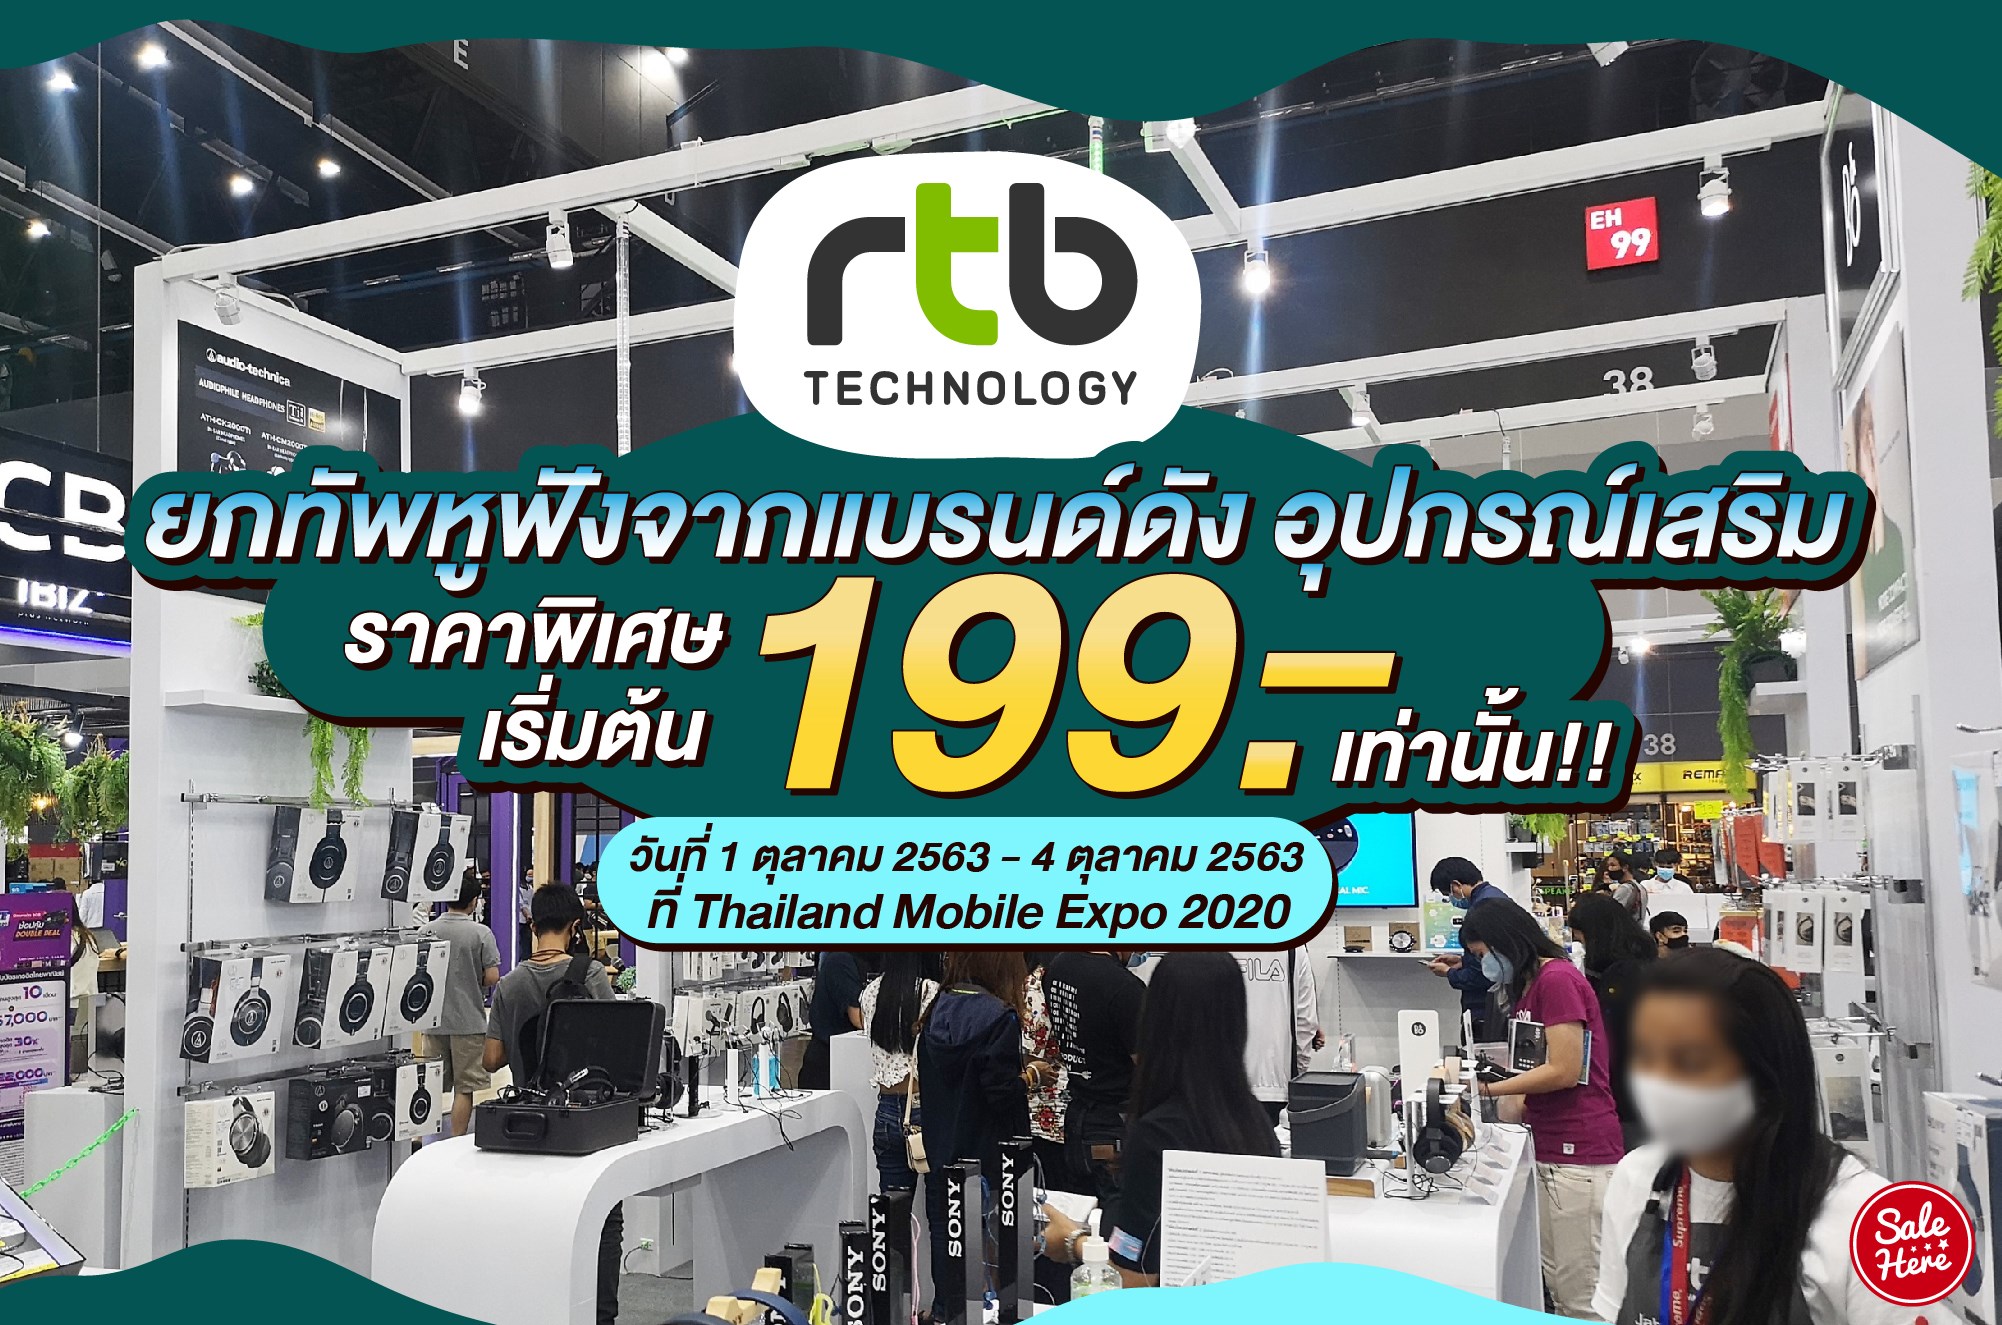 อาร์ทีบี ยกทัพหูฟังจากแบรนด์ดังร่วมงาน Thailand Mobile Expo 2020 ในระหว่างวันที่ 1-4 ตุลาคม 2020 พิเศษ.สินค้าราคาเริ่มต้นที่ 199